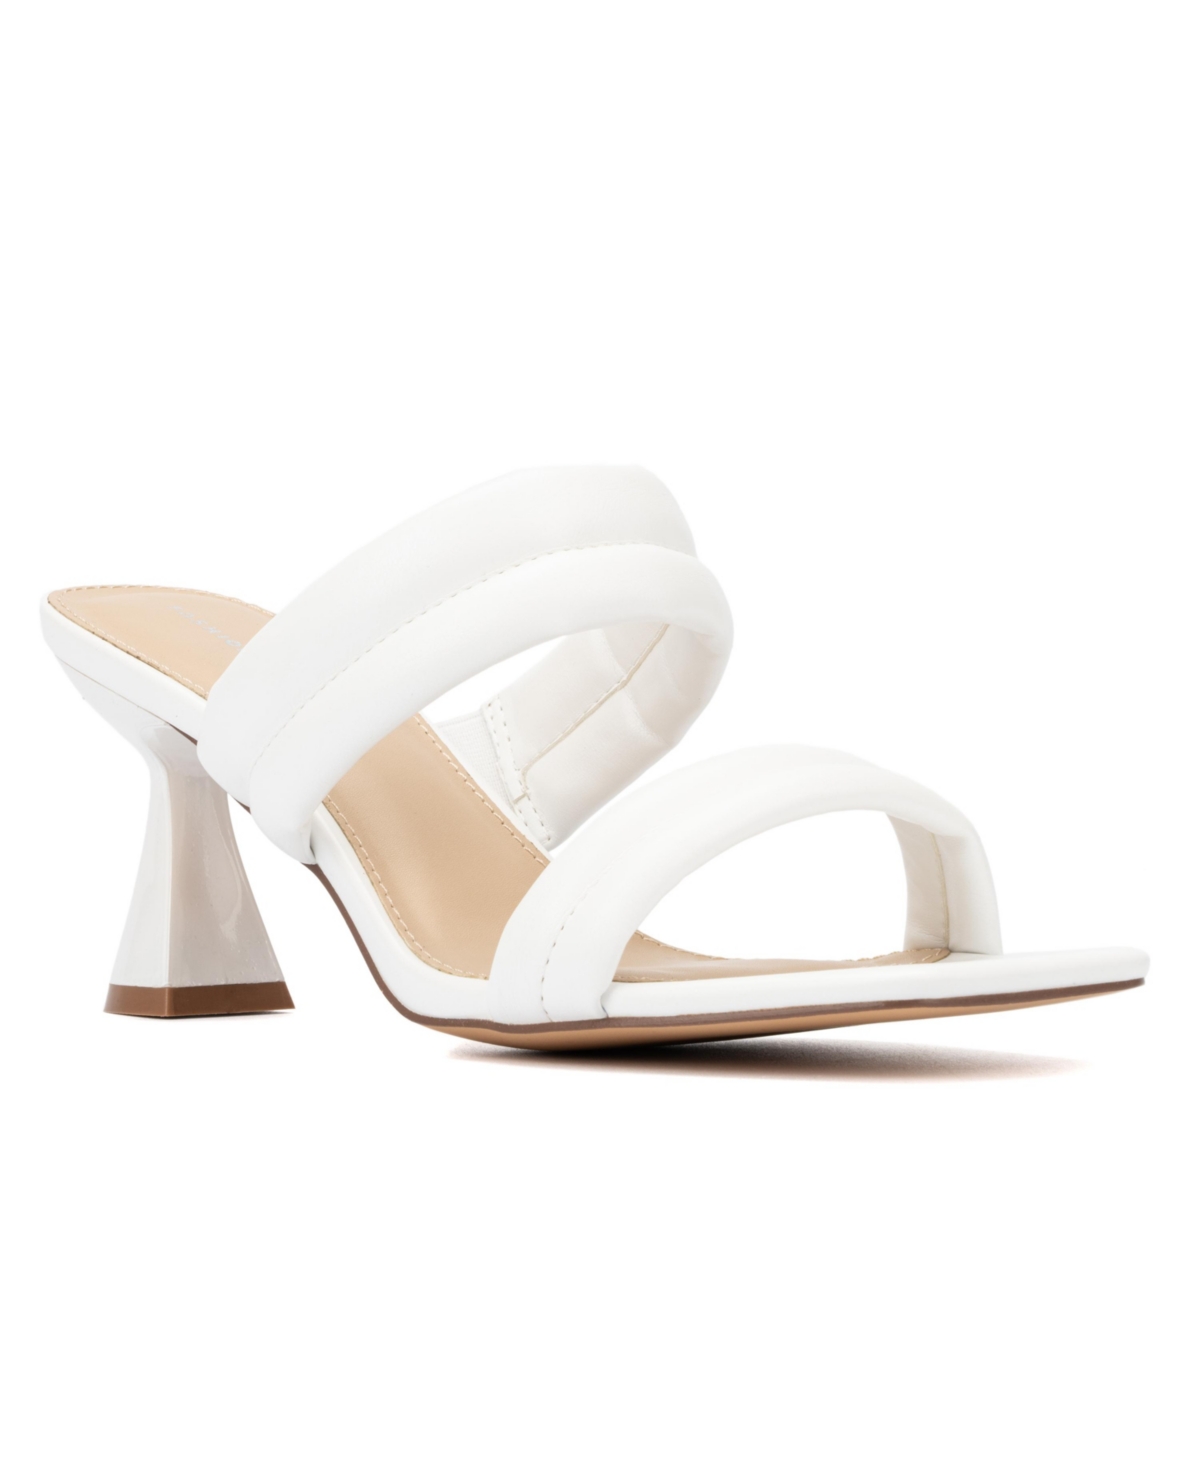 Women's Sophia Wide Width Heels Sandals - White